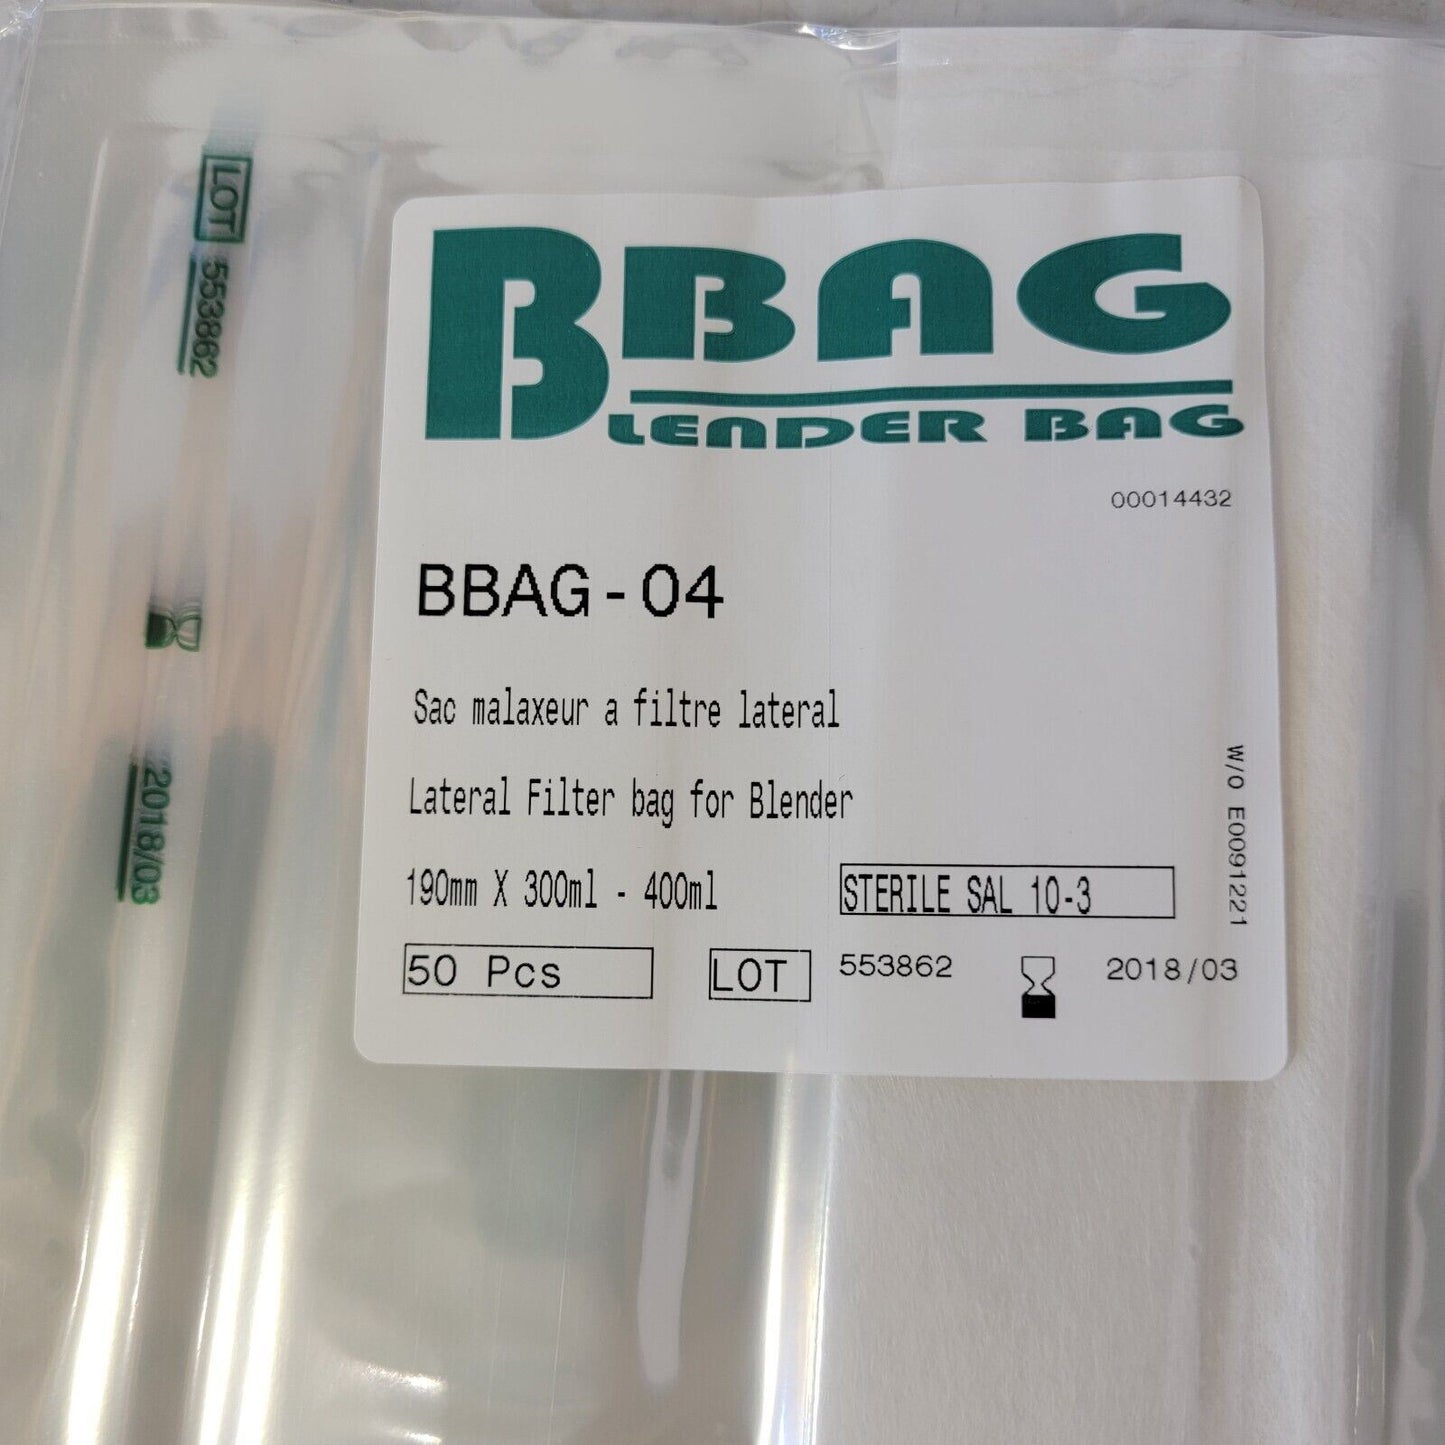 *50 Pcs* Corning Gosselin Blender Bag BBAG-04, 400 mL, Sterile Lateral Filter